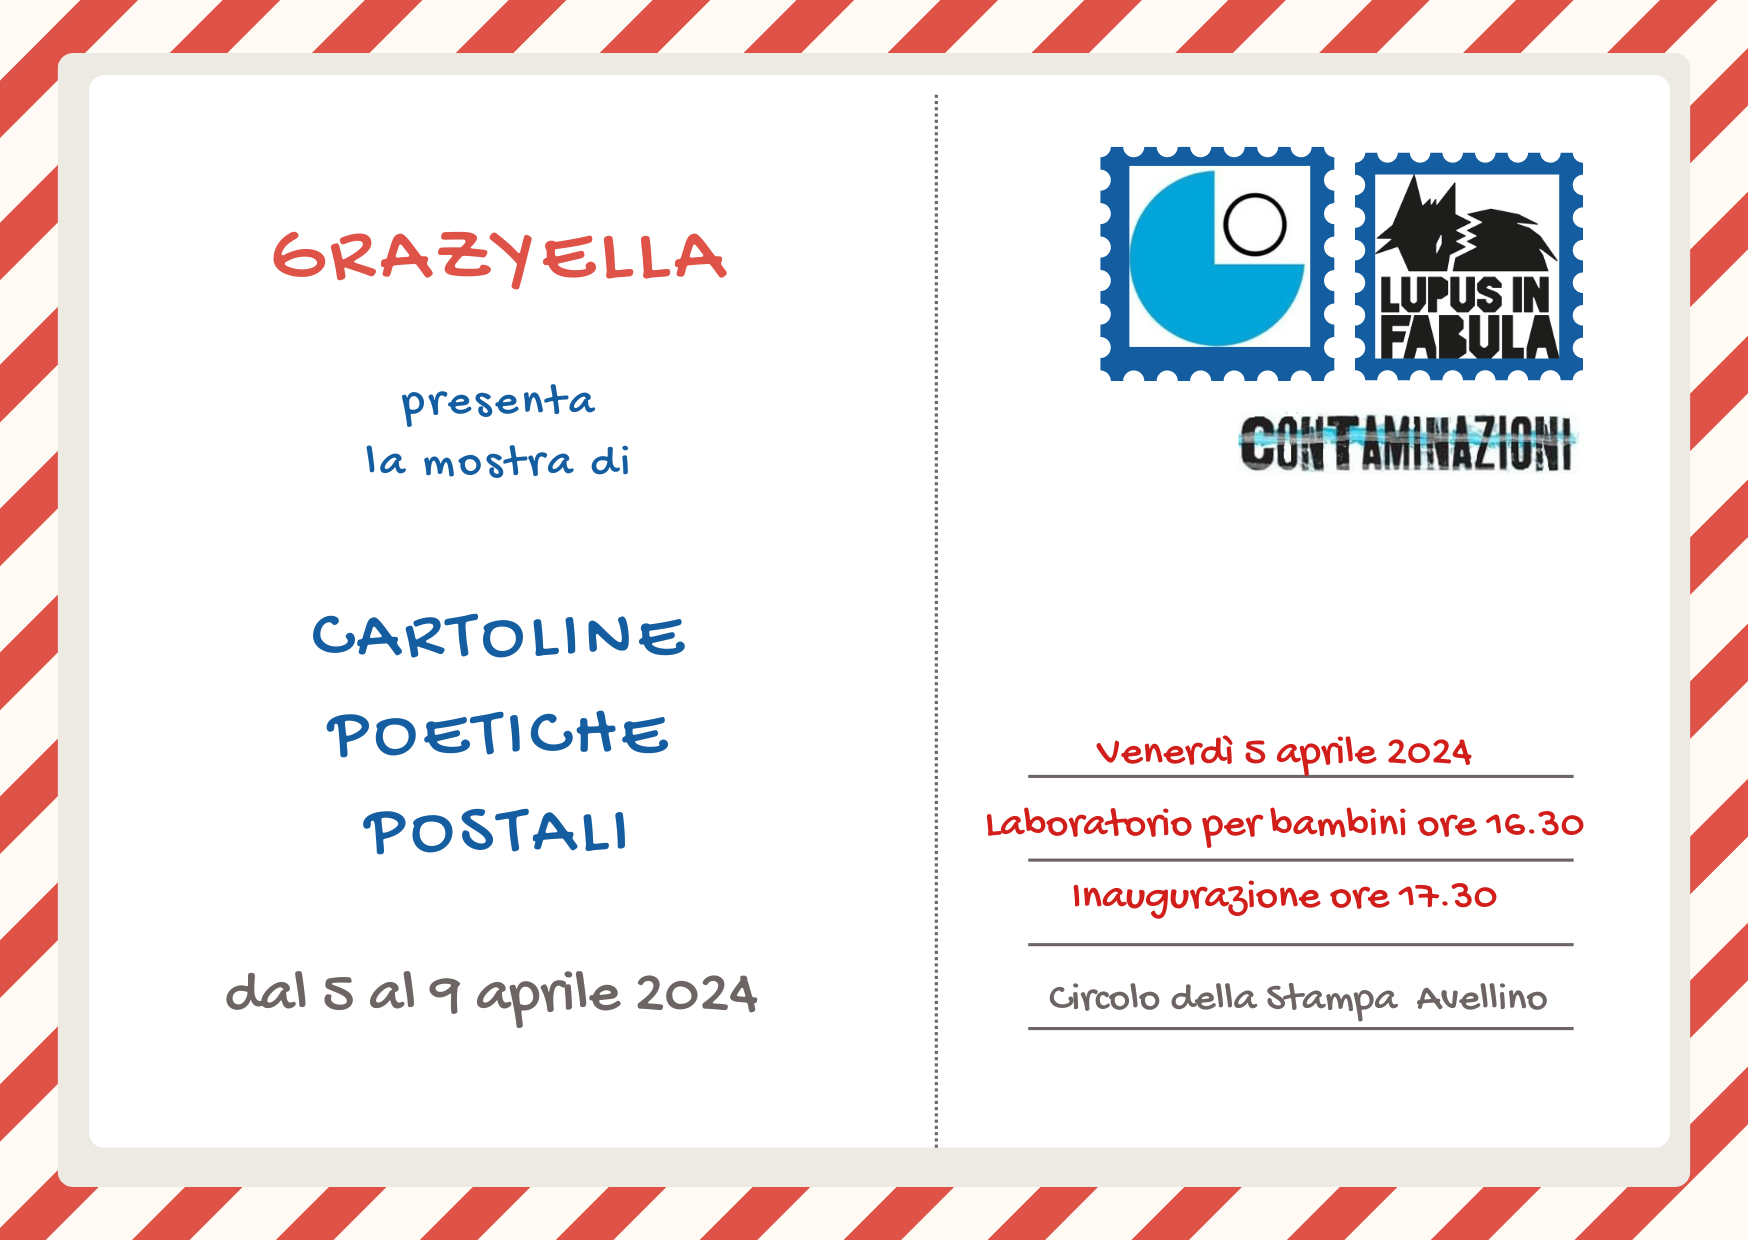 Avellino| Al Circolo della Stampa la mostra di cartoline poetiche dell’artista irpina Grazyella